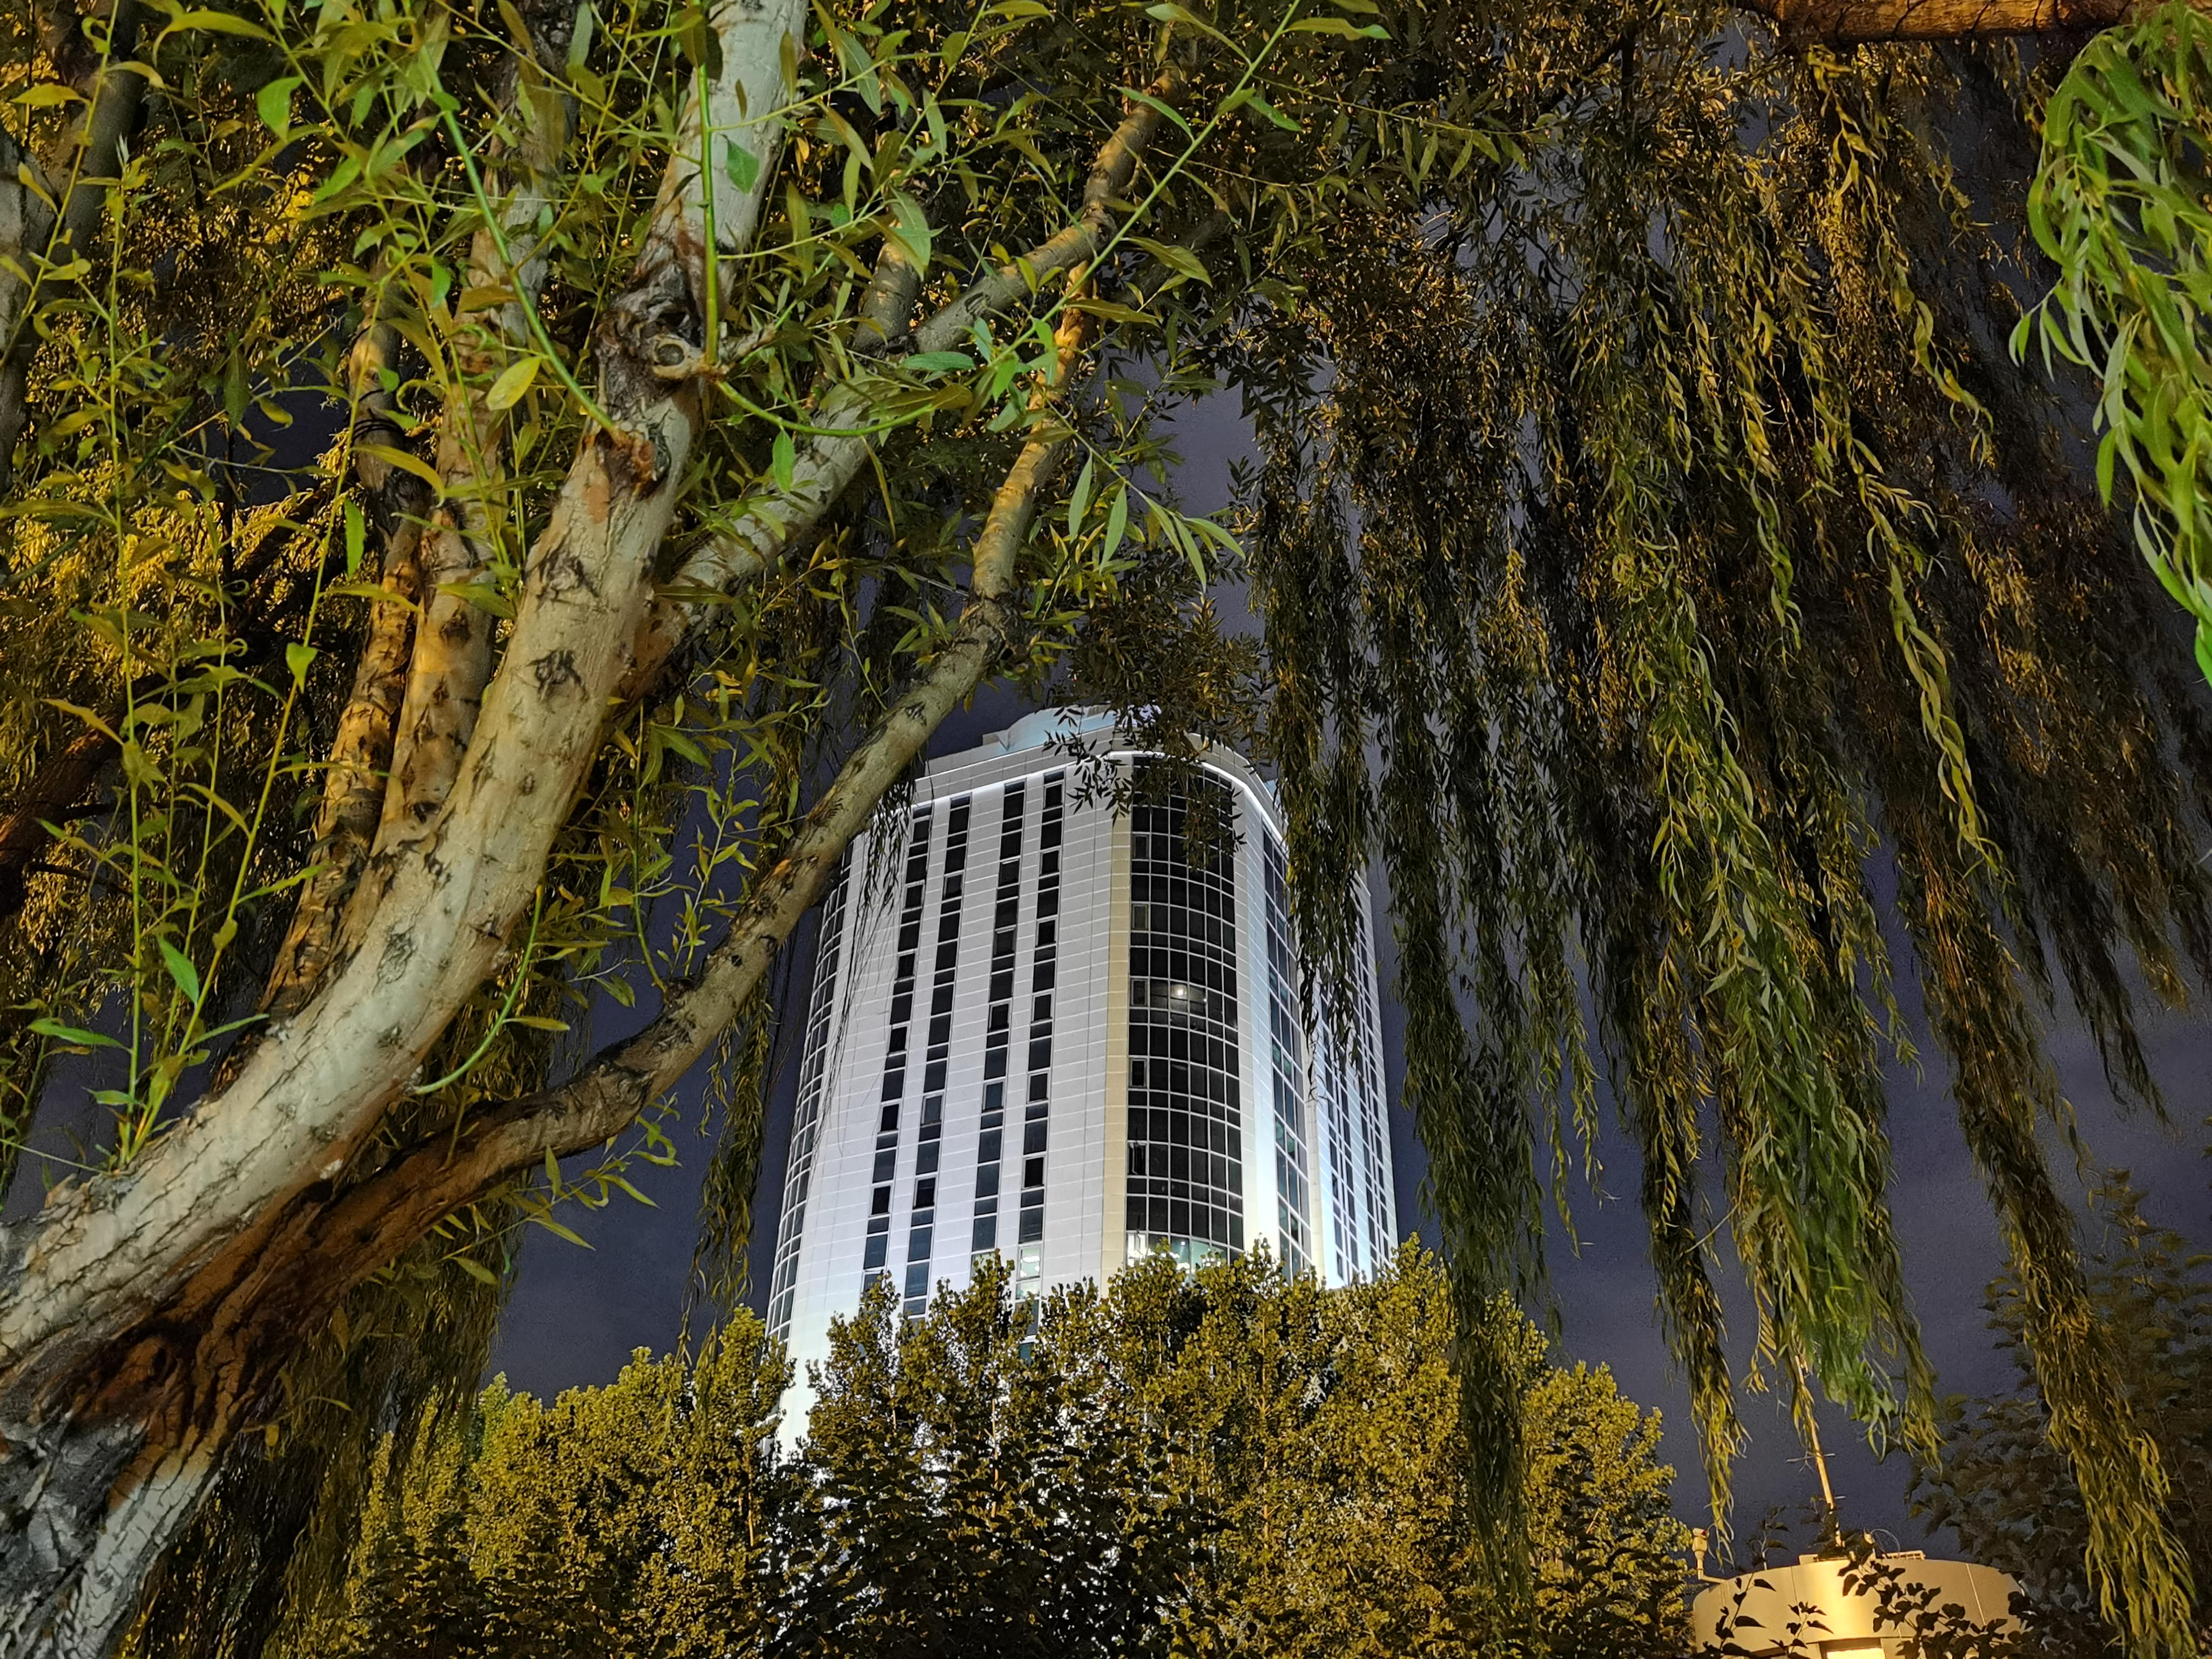 نمونه عکس واید هواوی P40 Pro در تاریکی با حالت Night - ساختمان و درخت